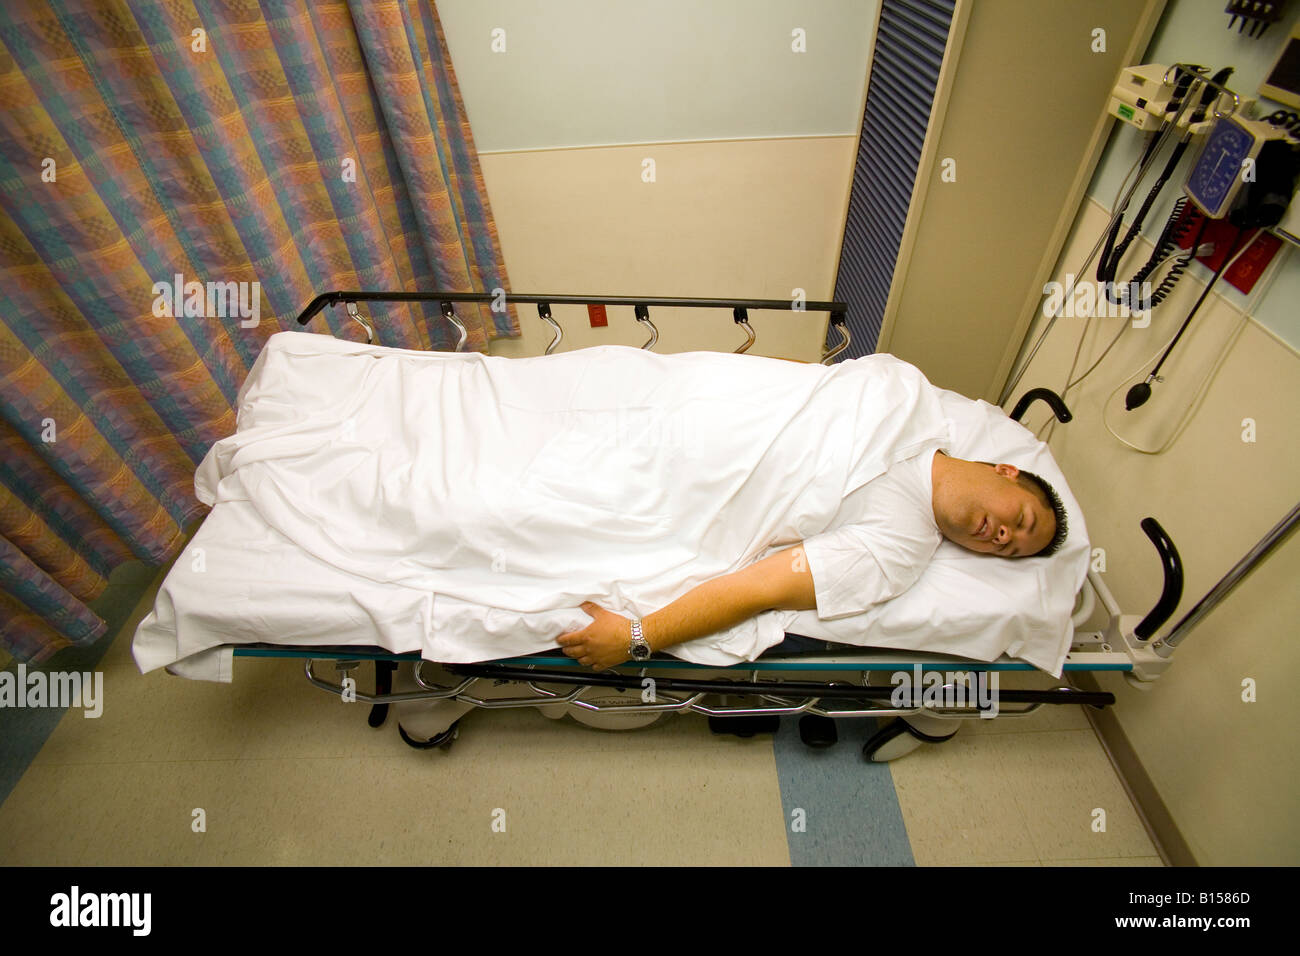 Un patient dans une Orange CA d'urgence de l'hôpital a été placé dans la position de sauvetage pour le choc avec les jambes soulevées Banque D'Images